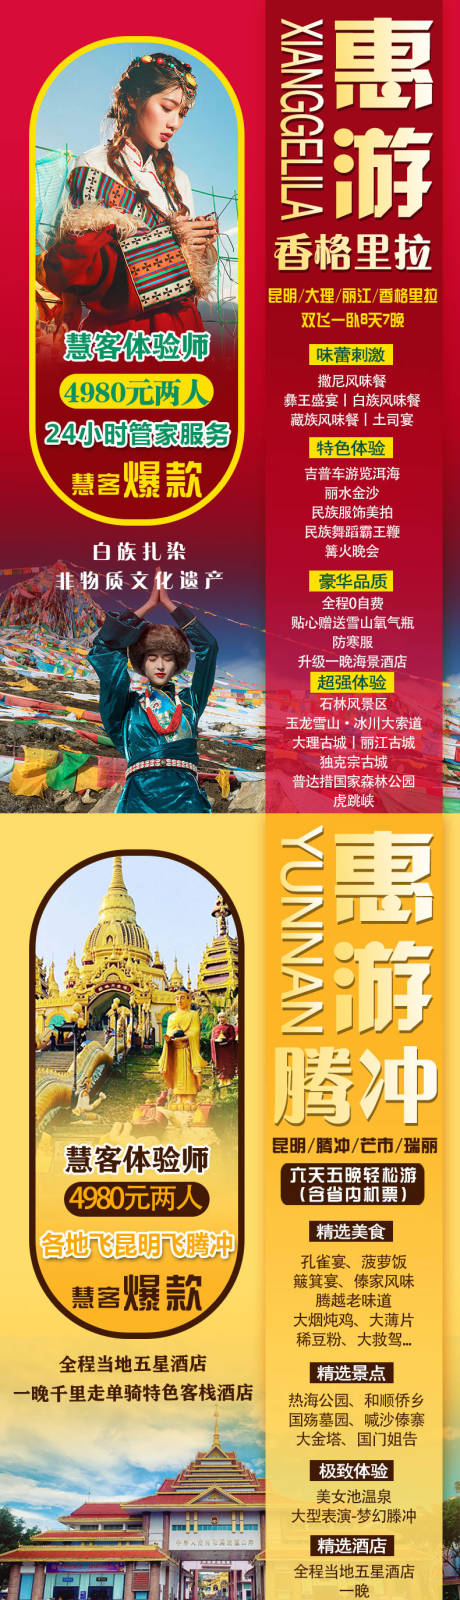 云南旅游系列海报